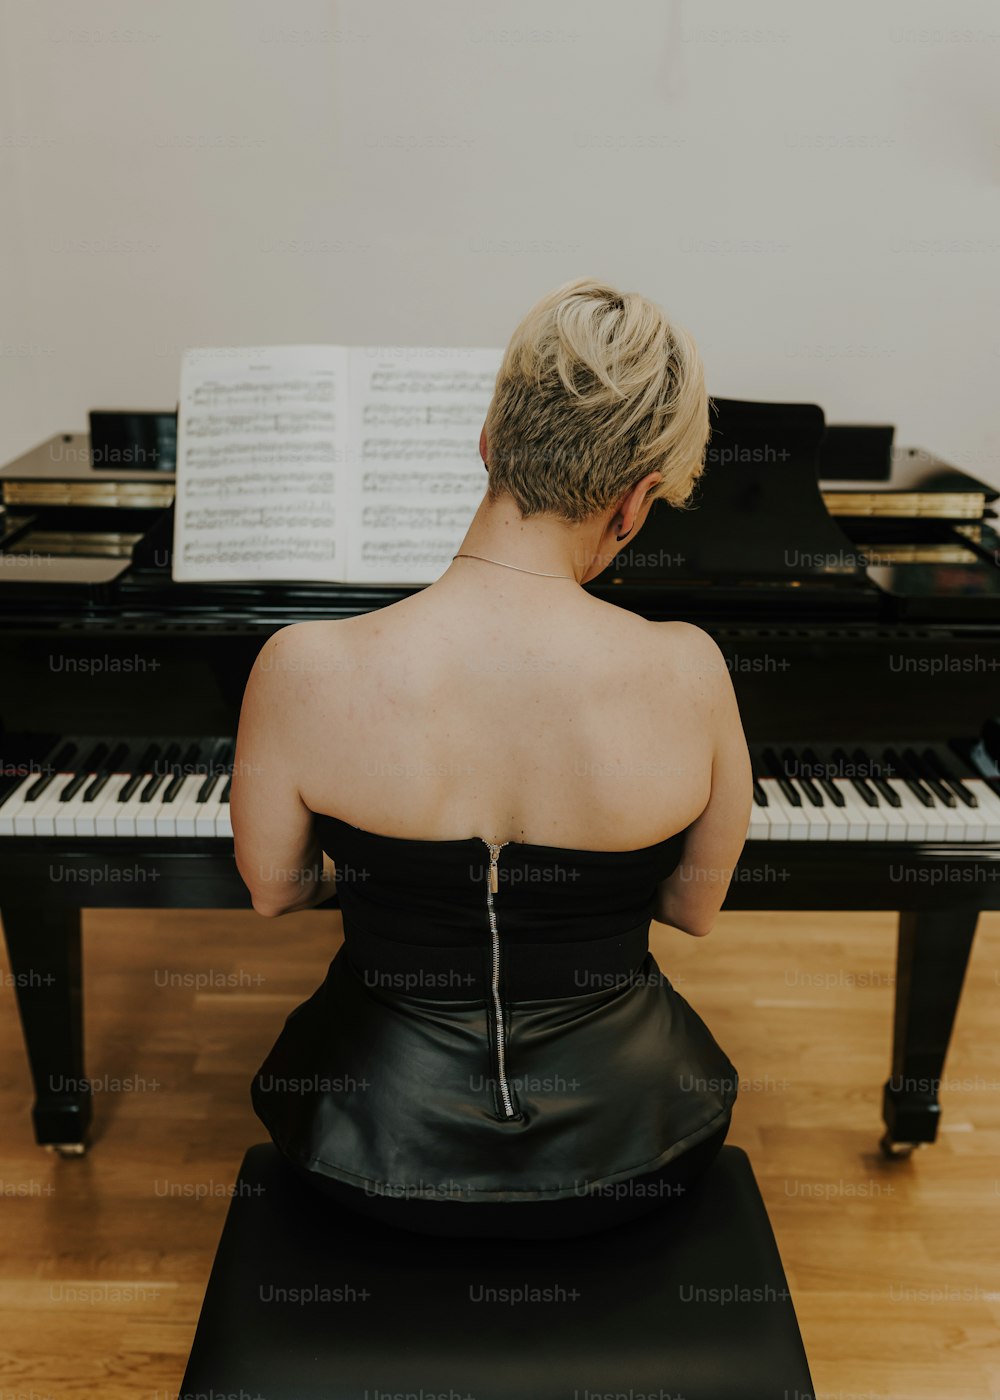 검�은 드레스를 입은 여자가 피아노 앞에 앉아 있다